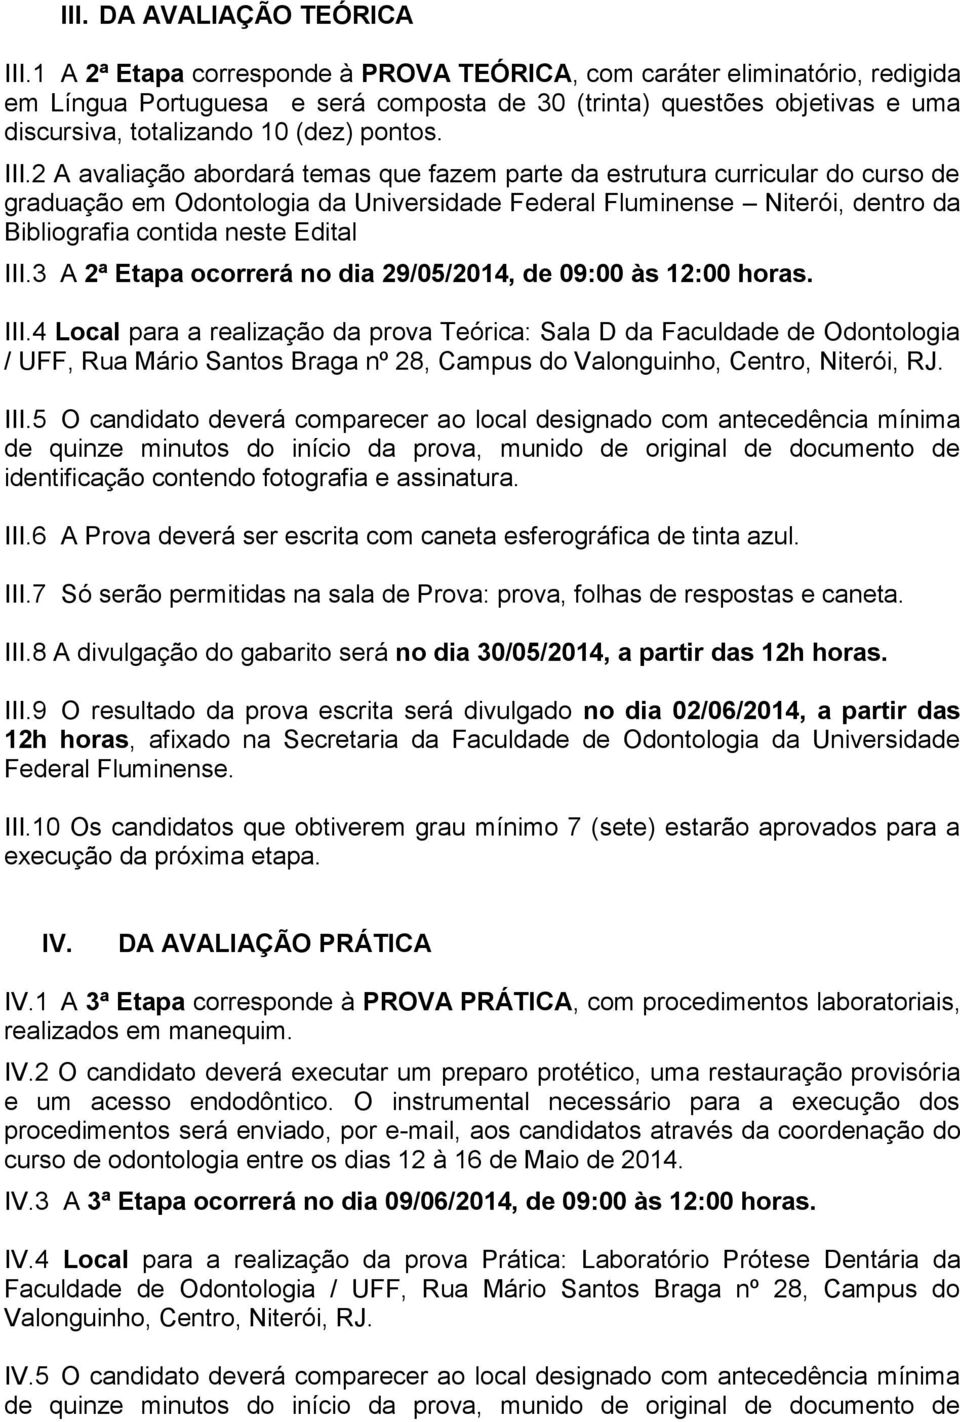 2 A avaliação abordará temas que fazem parte da estrutura curricular do curso de graduação em Odontologia da Universidade Federal Fluminense Niterói, dentro da Bibliografia contida neste Edital III.